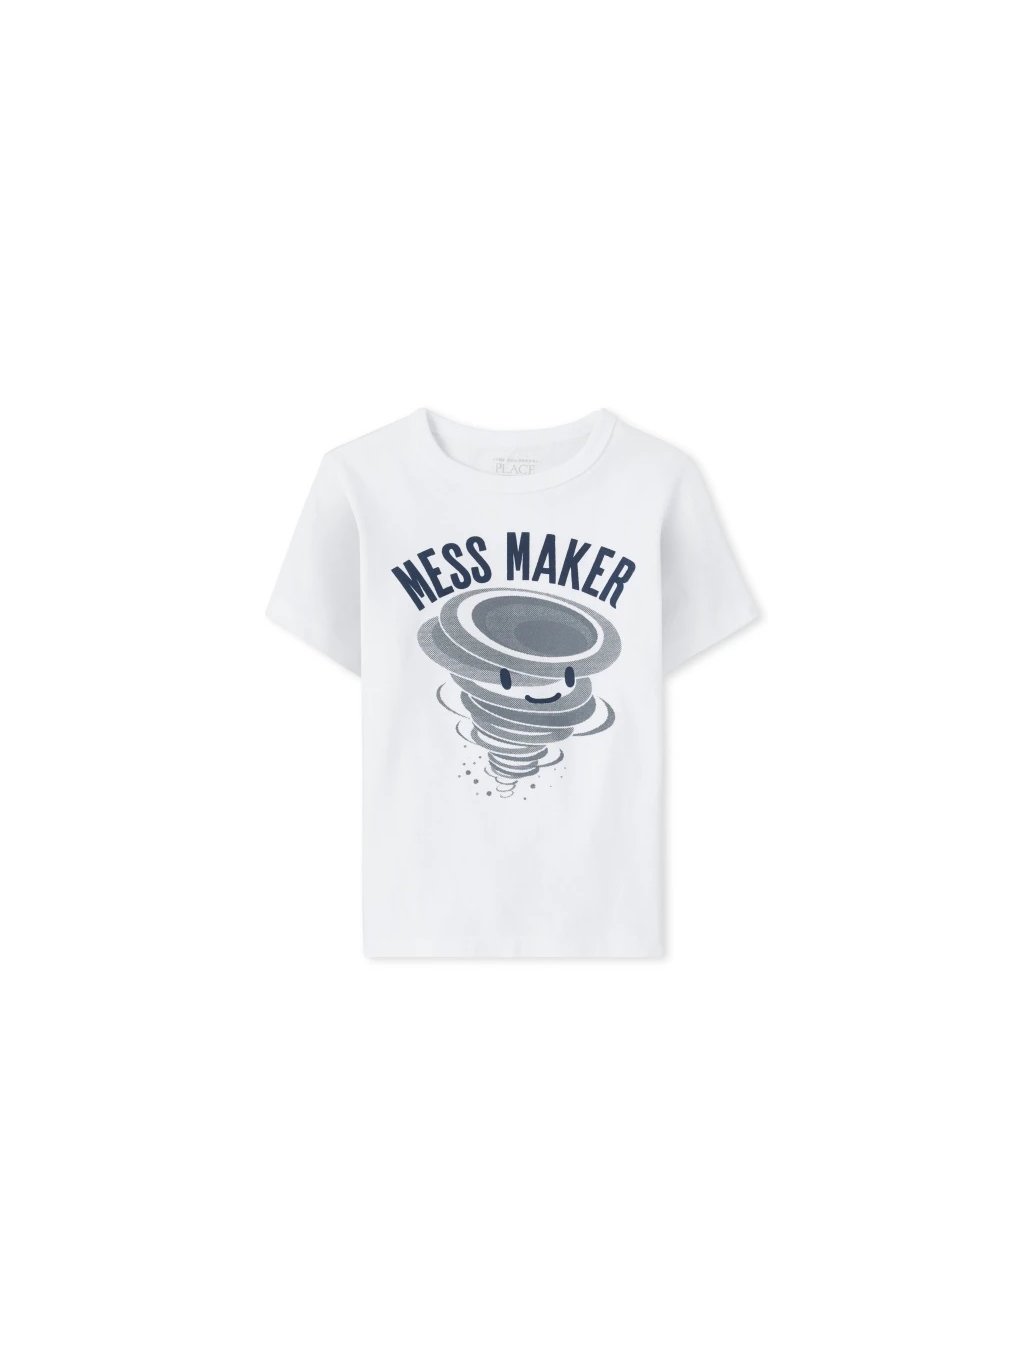 dívčí a chlapecké tričko children´s place - mess maker